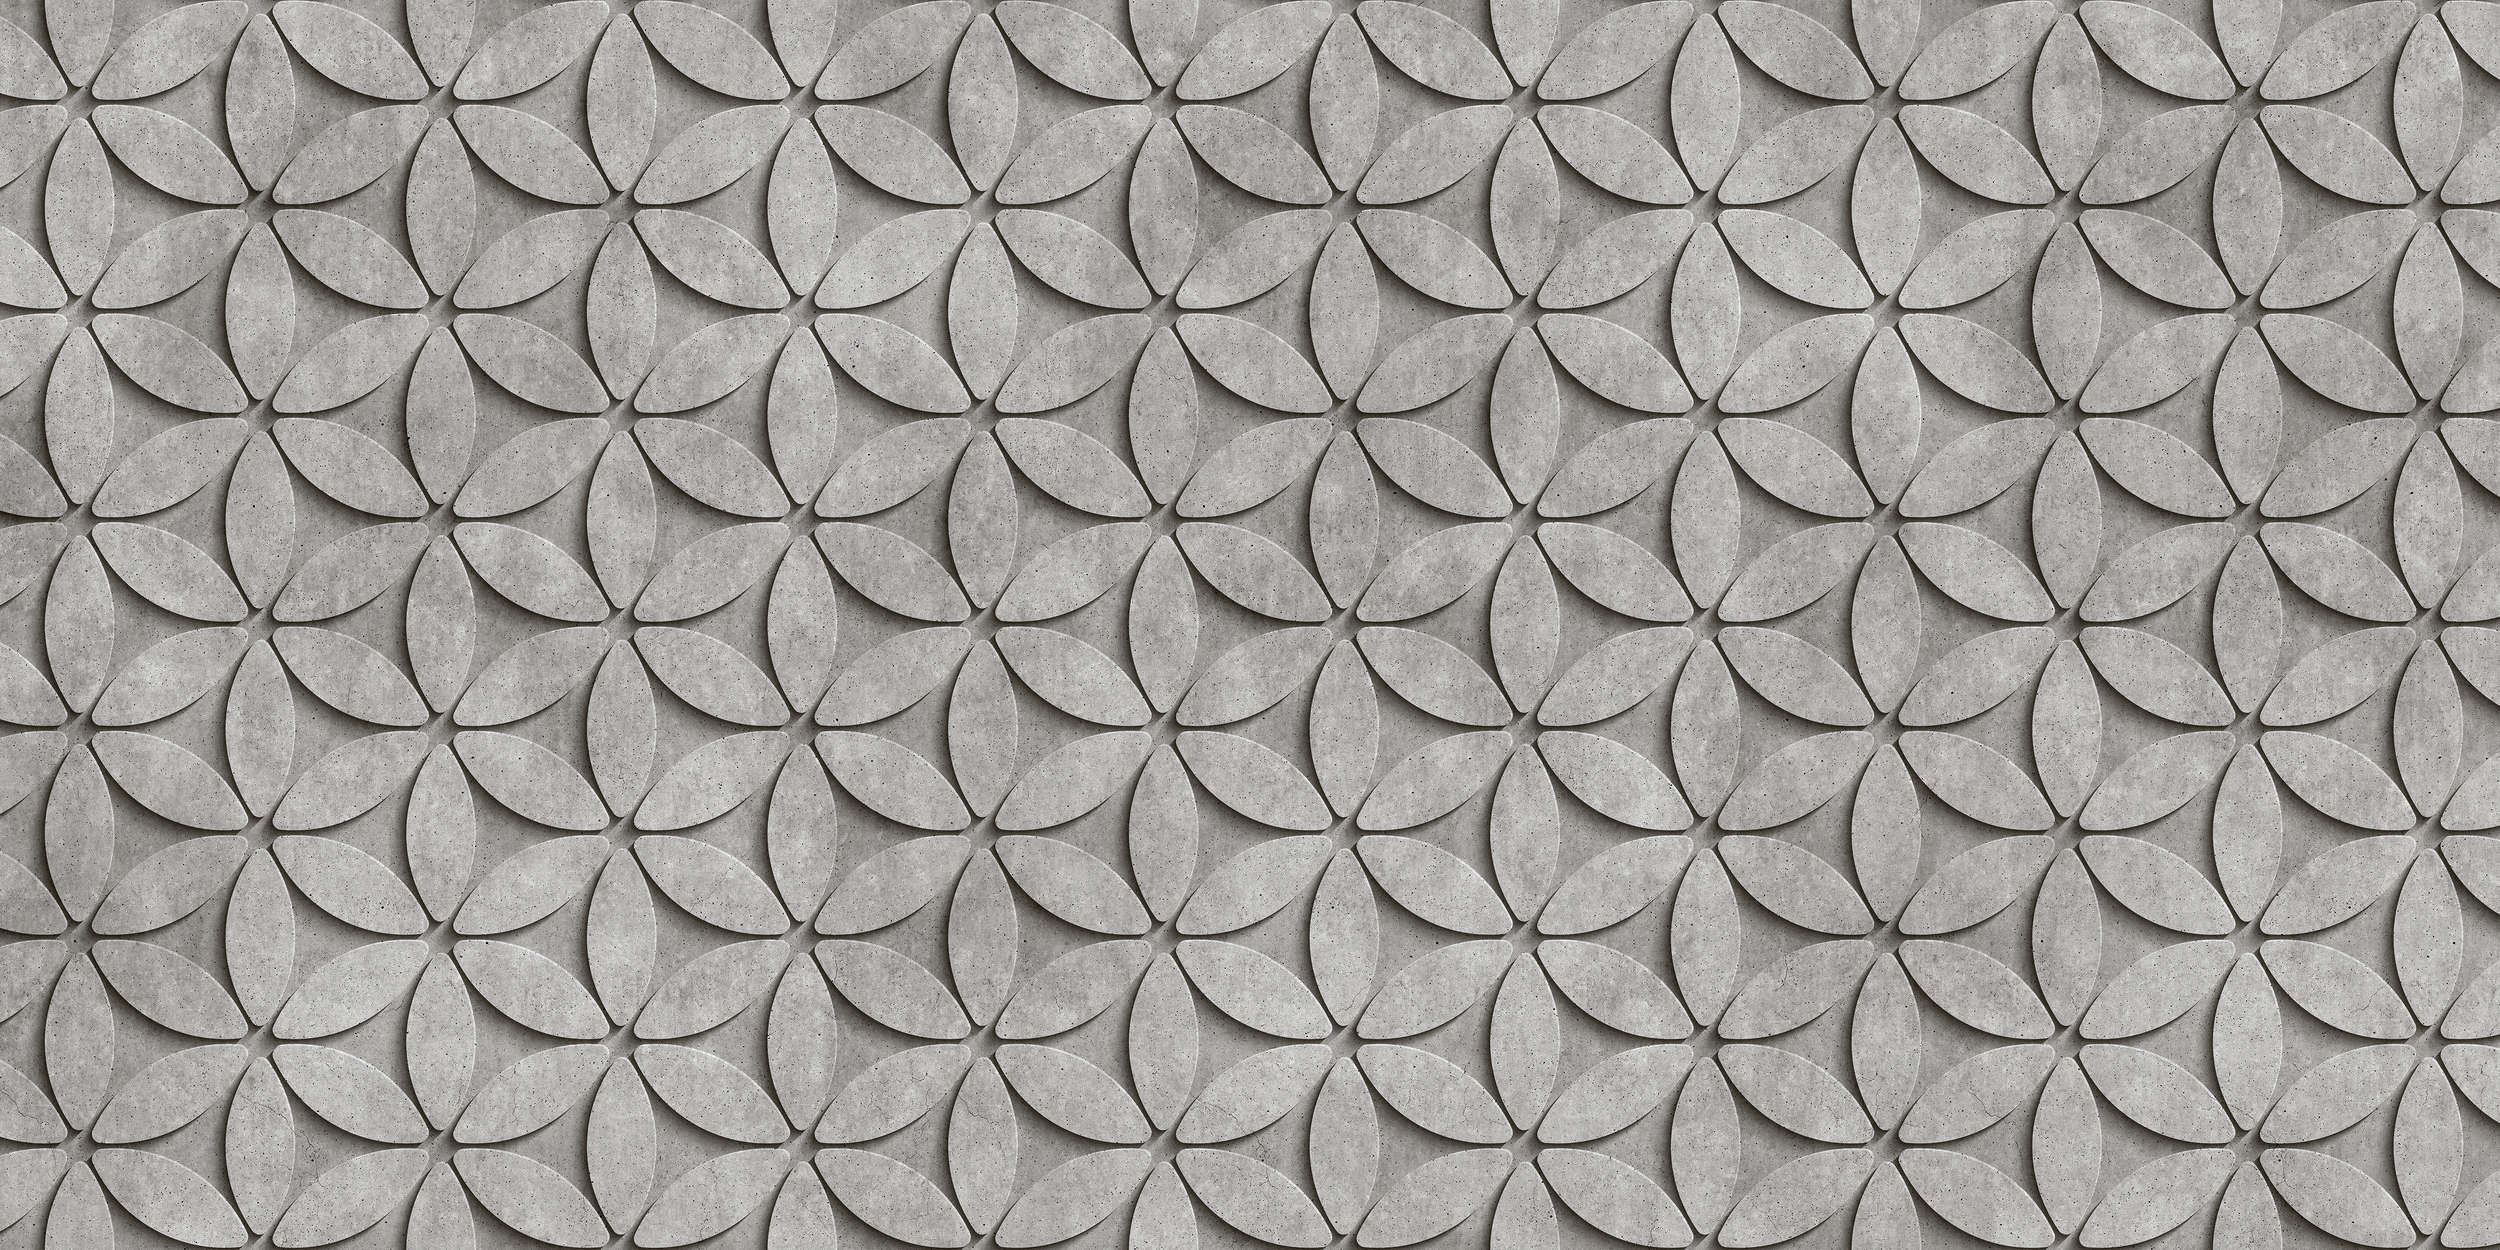             Azulejo 1 - Papel pintado Polígonos de hormigón 3D - Gris, Negro | Estructura no tejida
        